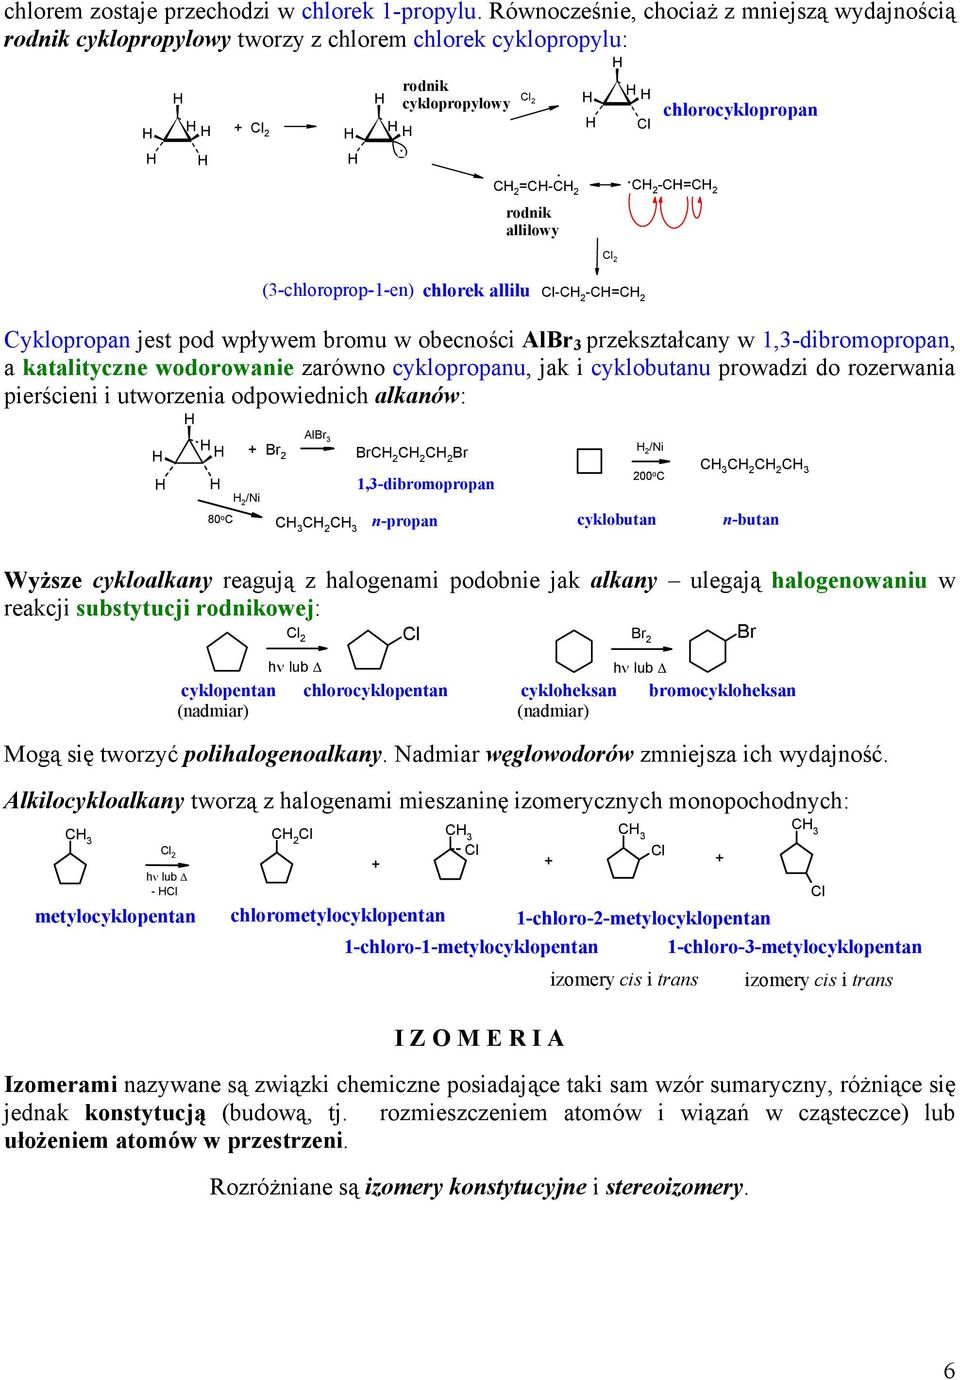 chlorocyklopropan (-chloroprop--en) chlorek allilu l- -= yklopropan jest pod wpływem bromu w obecności Al przekształcany w,-dibromopropan, a katalityczne wodorowanie zarówno cyklopropanu, jak i